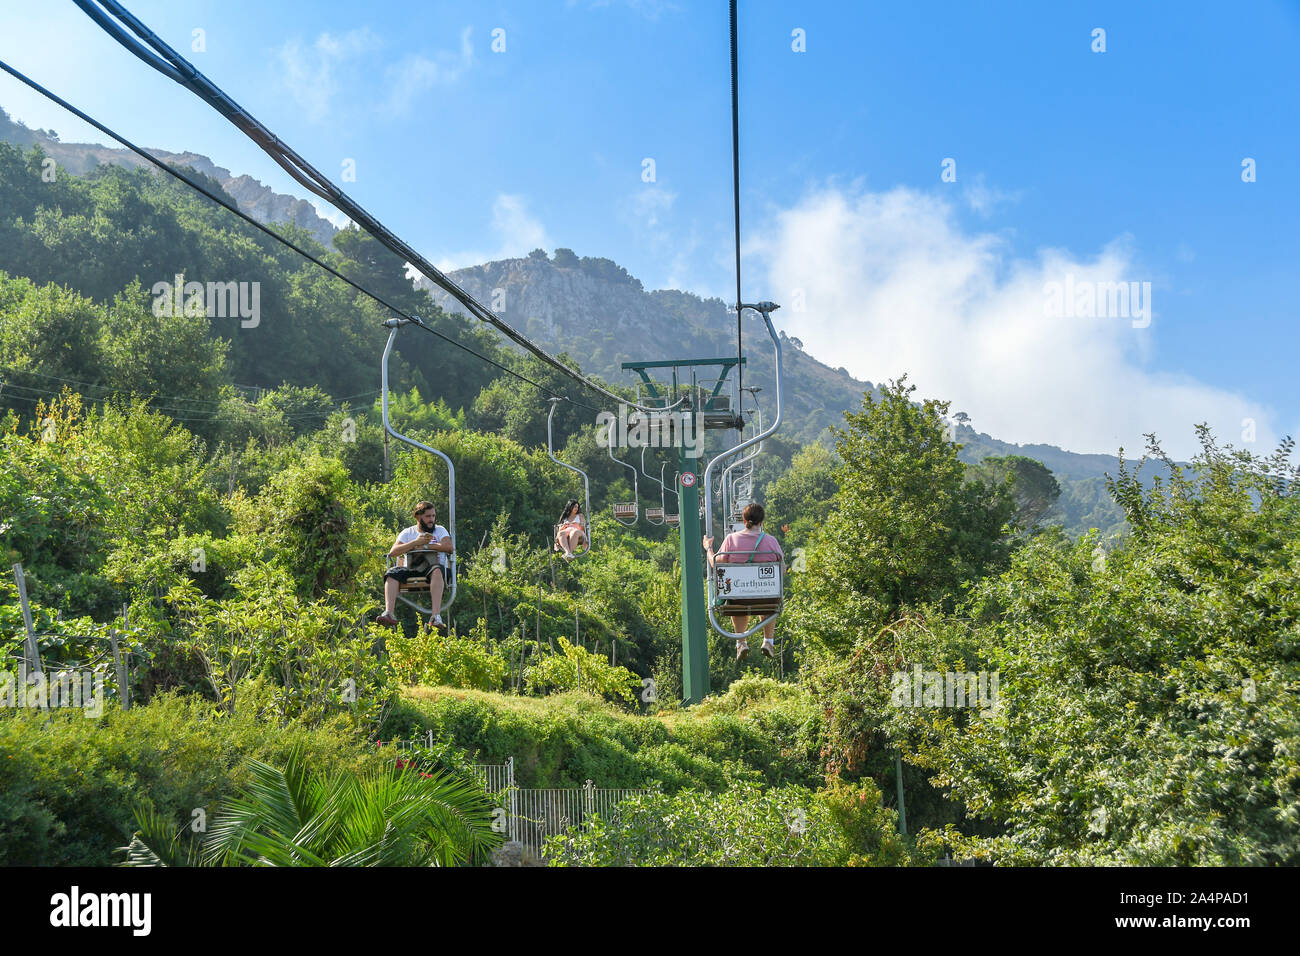 ANACAPRI, à l'île de Capri, ITALIE - AOÛT 2019 : Visiteurs équitation le télésiège sur la montagne au sommet du Mont Solaro, Anacapri ci-dessus Banque D'Images